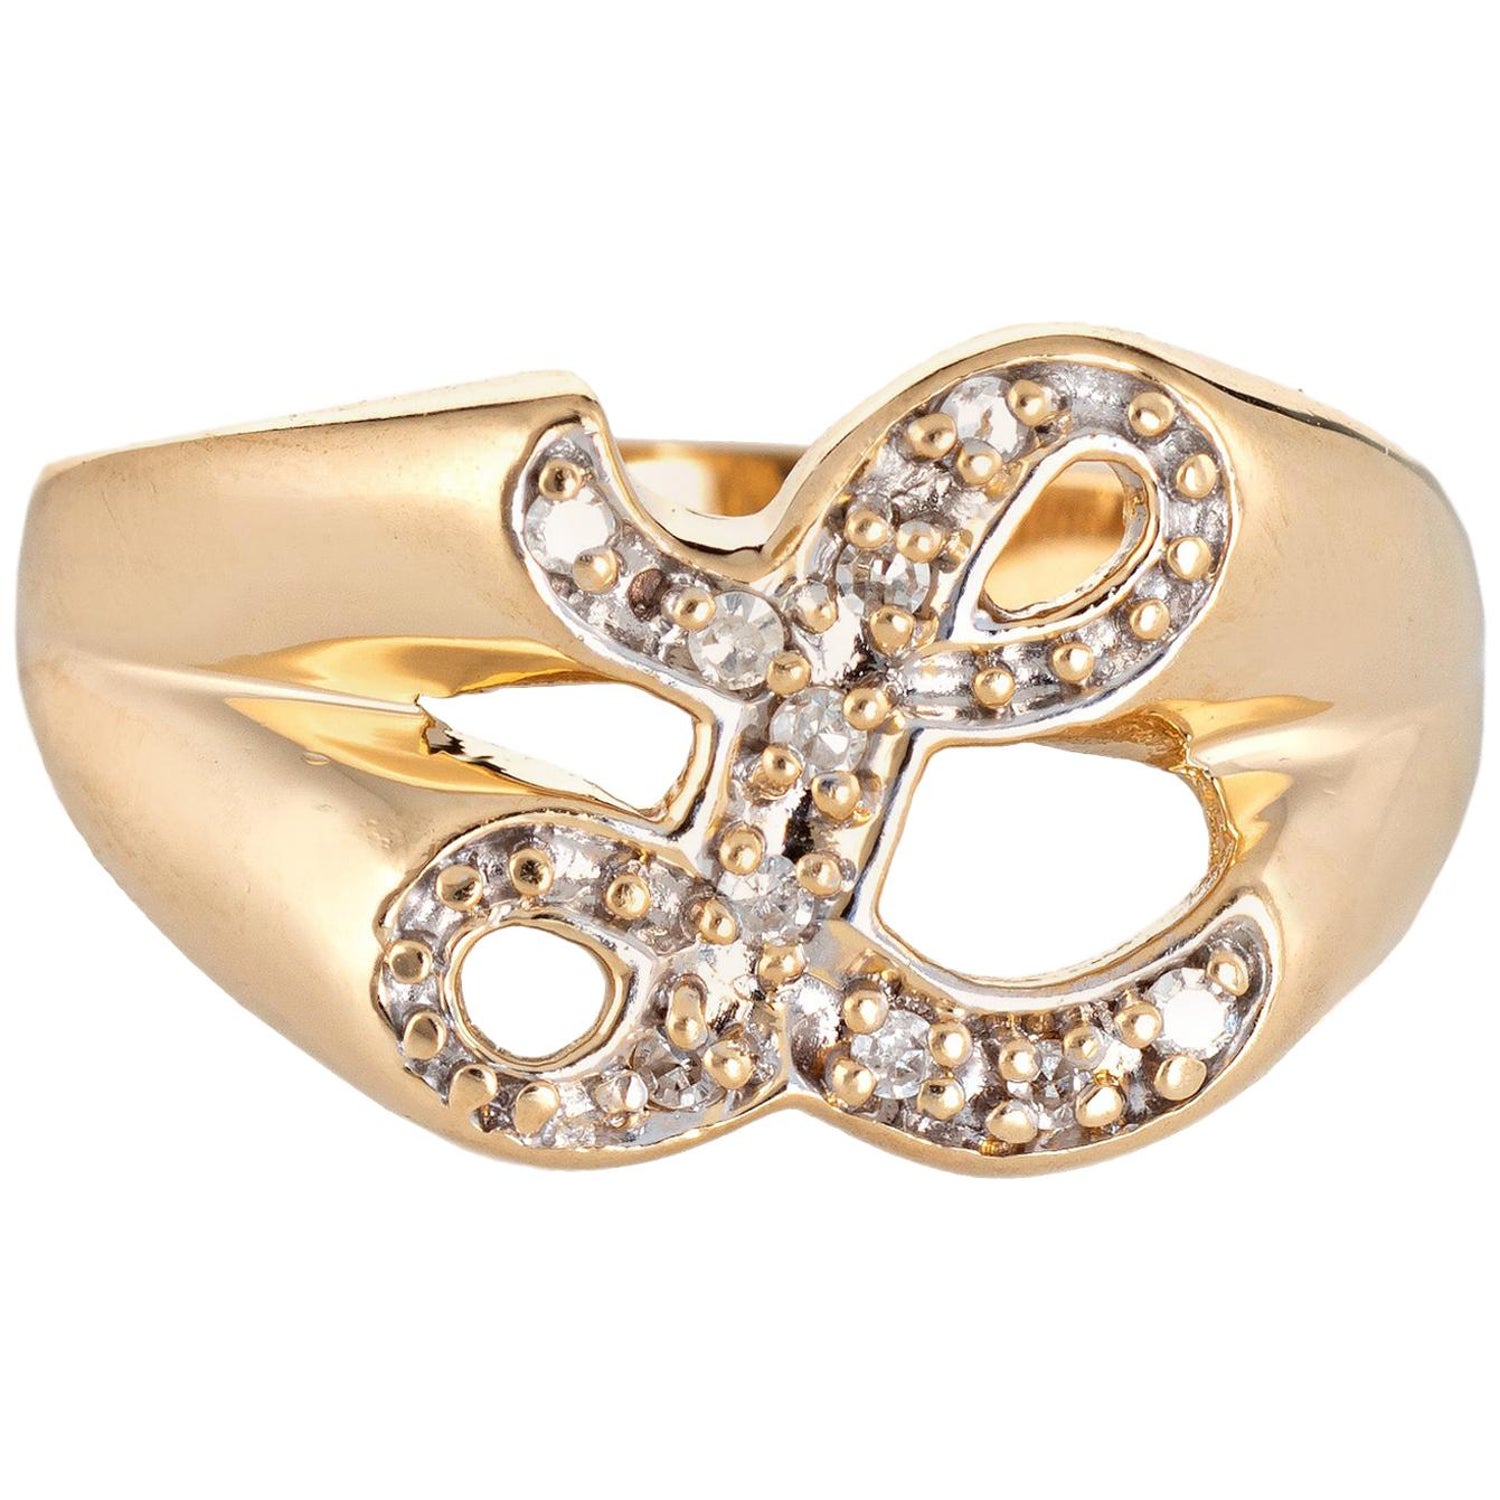 LOUIS VUITTON Signet Ring Monogram Size L Metal Gold M80191 Retail $475  Plus tax